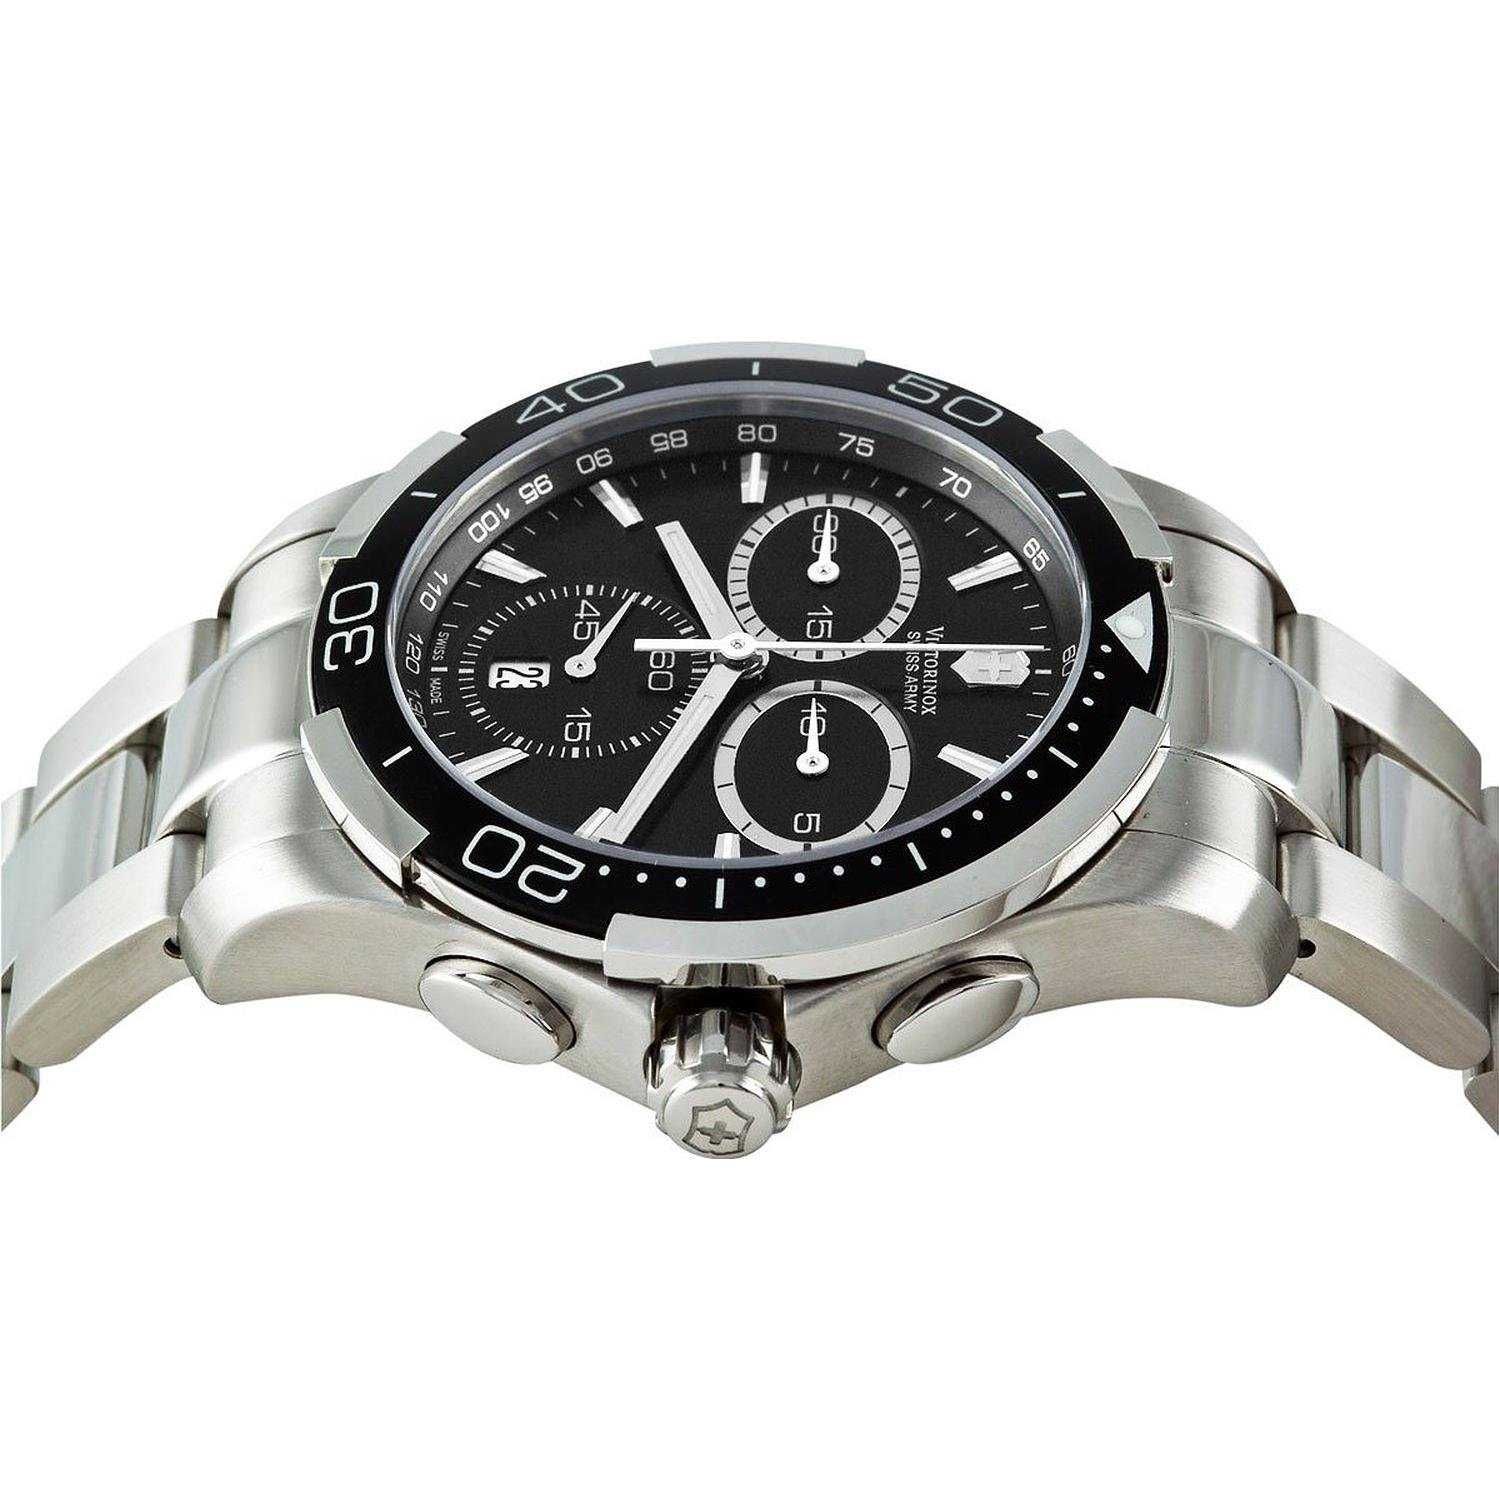 Zegarek Victorinox Swiss Army Alliance Sport chronograf nowy